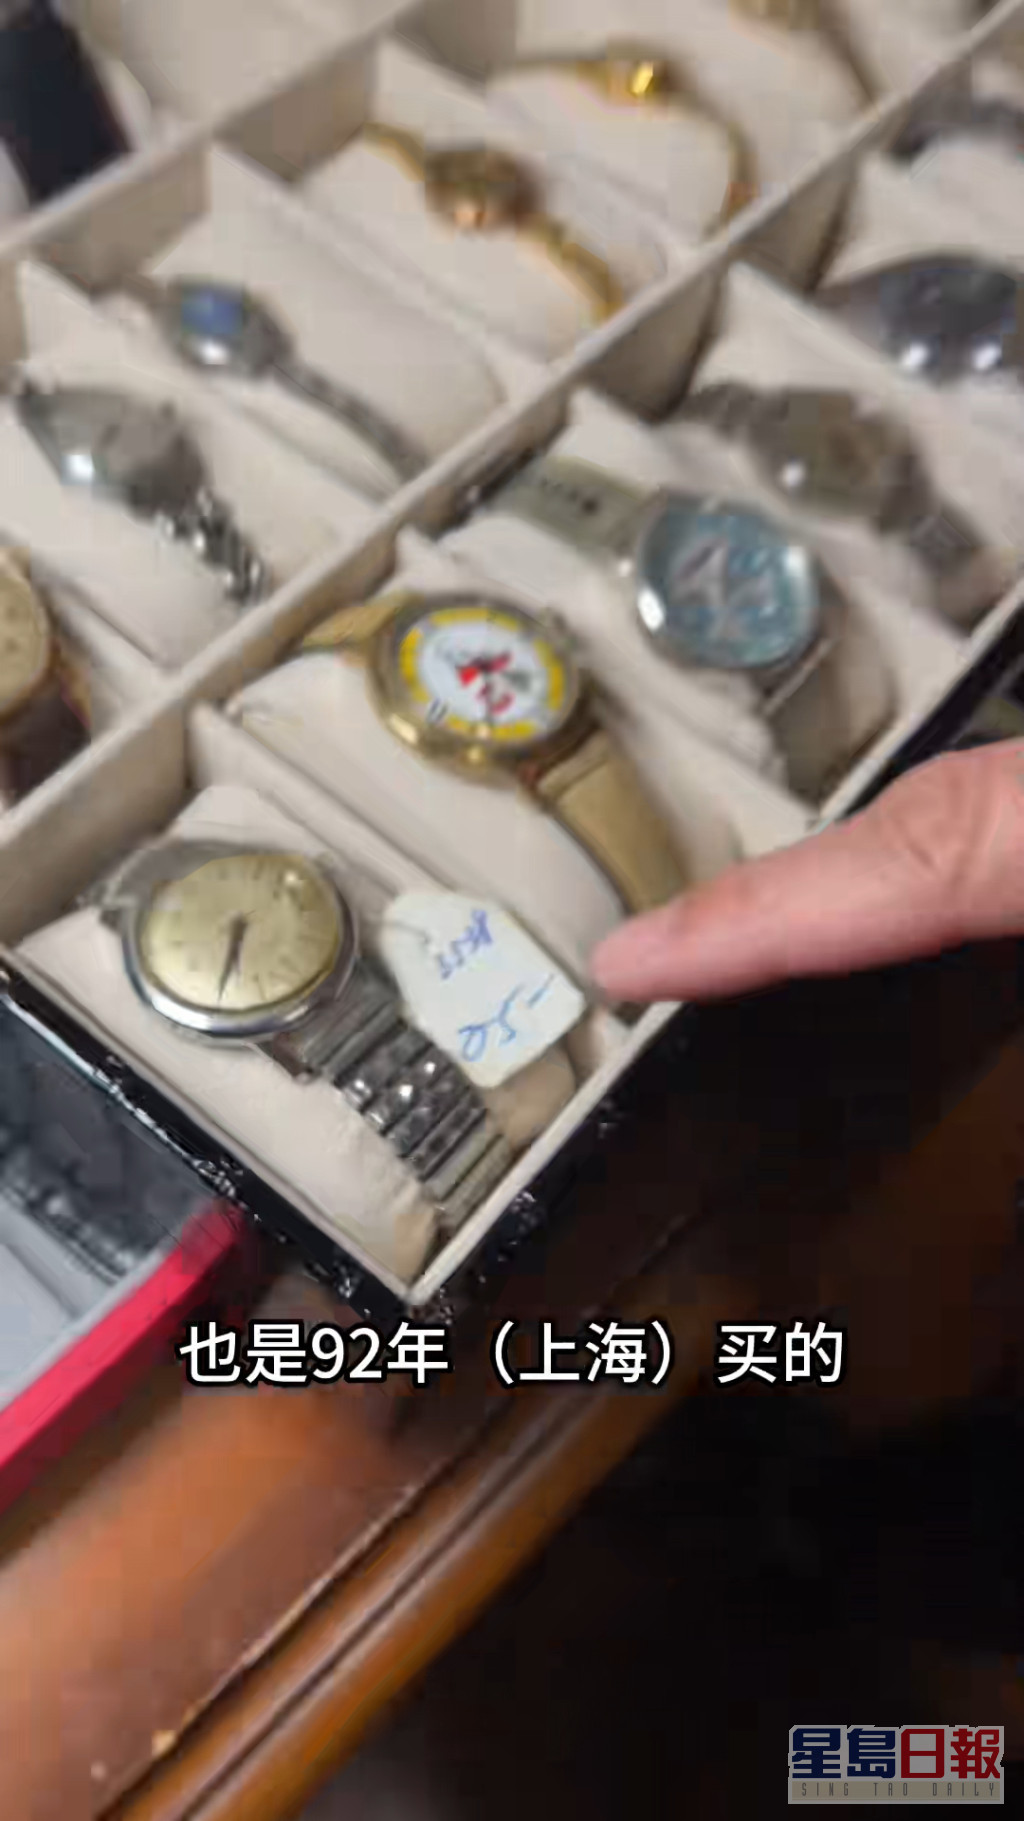 上海買的另一隻錶，當時標價僅25元，當然不可同日而語。